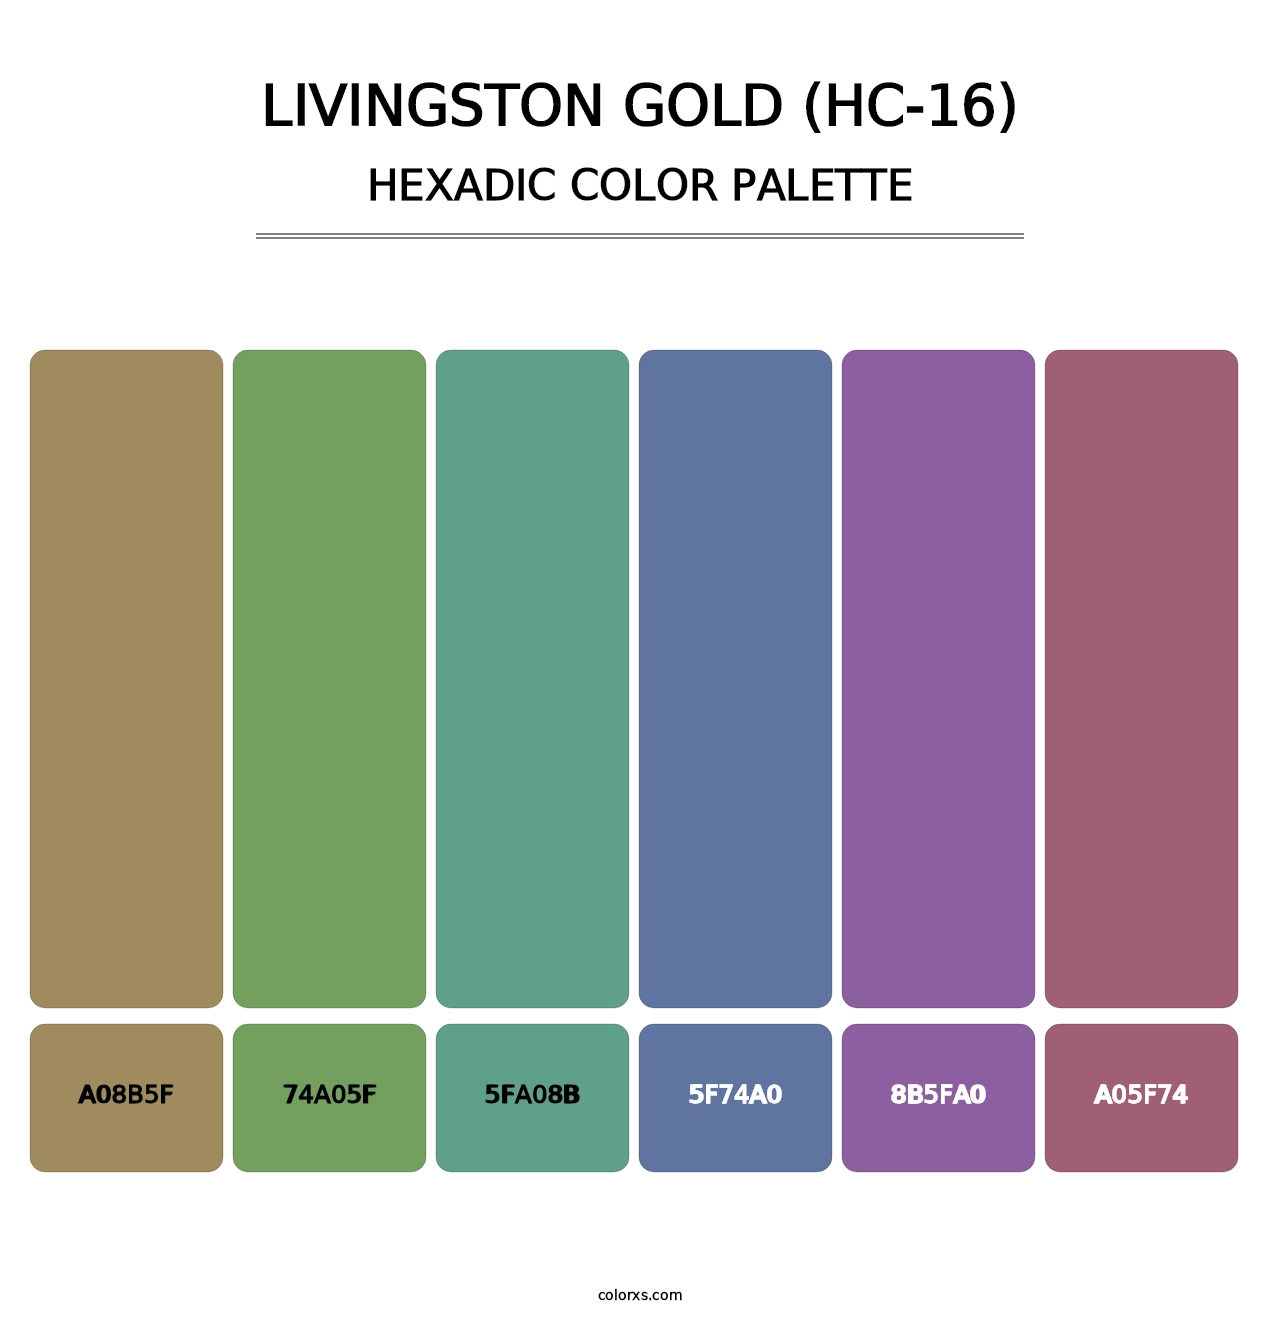 Livingston Gold (HC-16) - Hexadic Color Palette